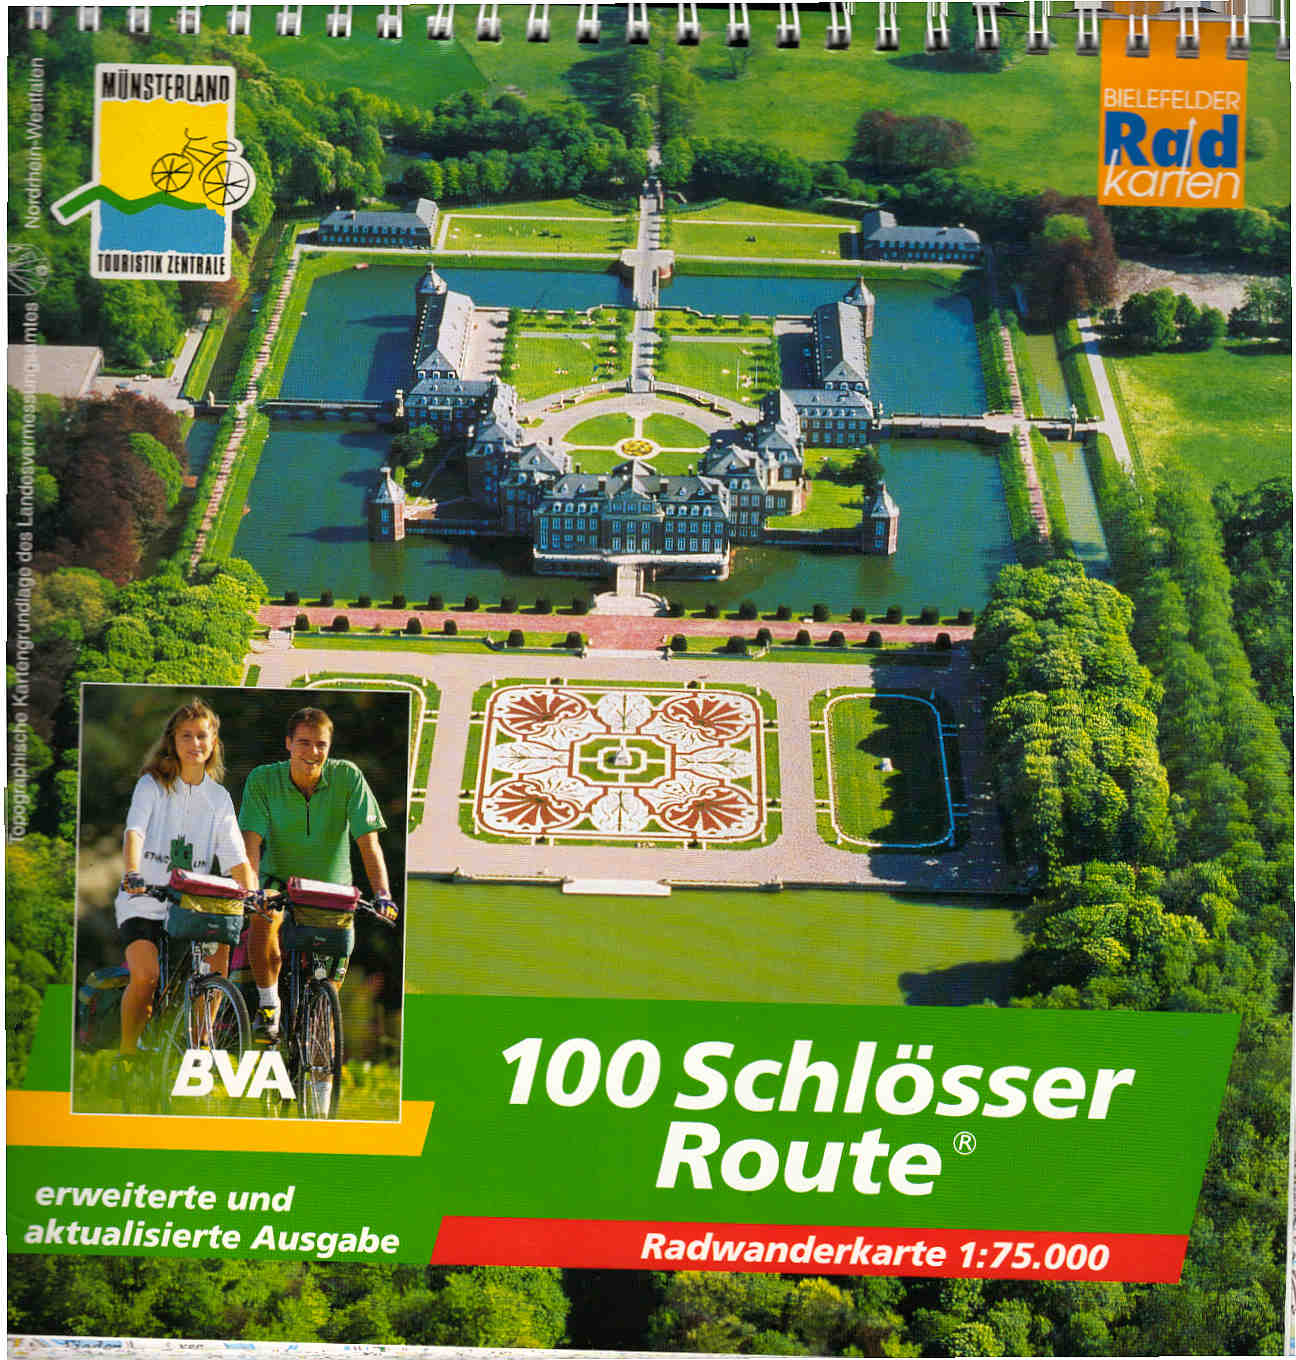 100-Schlösser-Route : Radwanderkarte 1:75000. Münsterland-Touristik-Zentrale / Bielefelder Radkarten